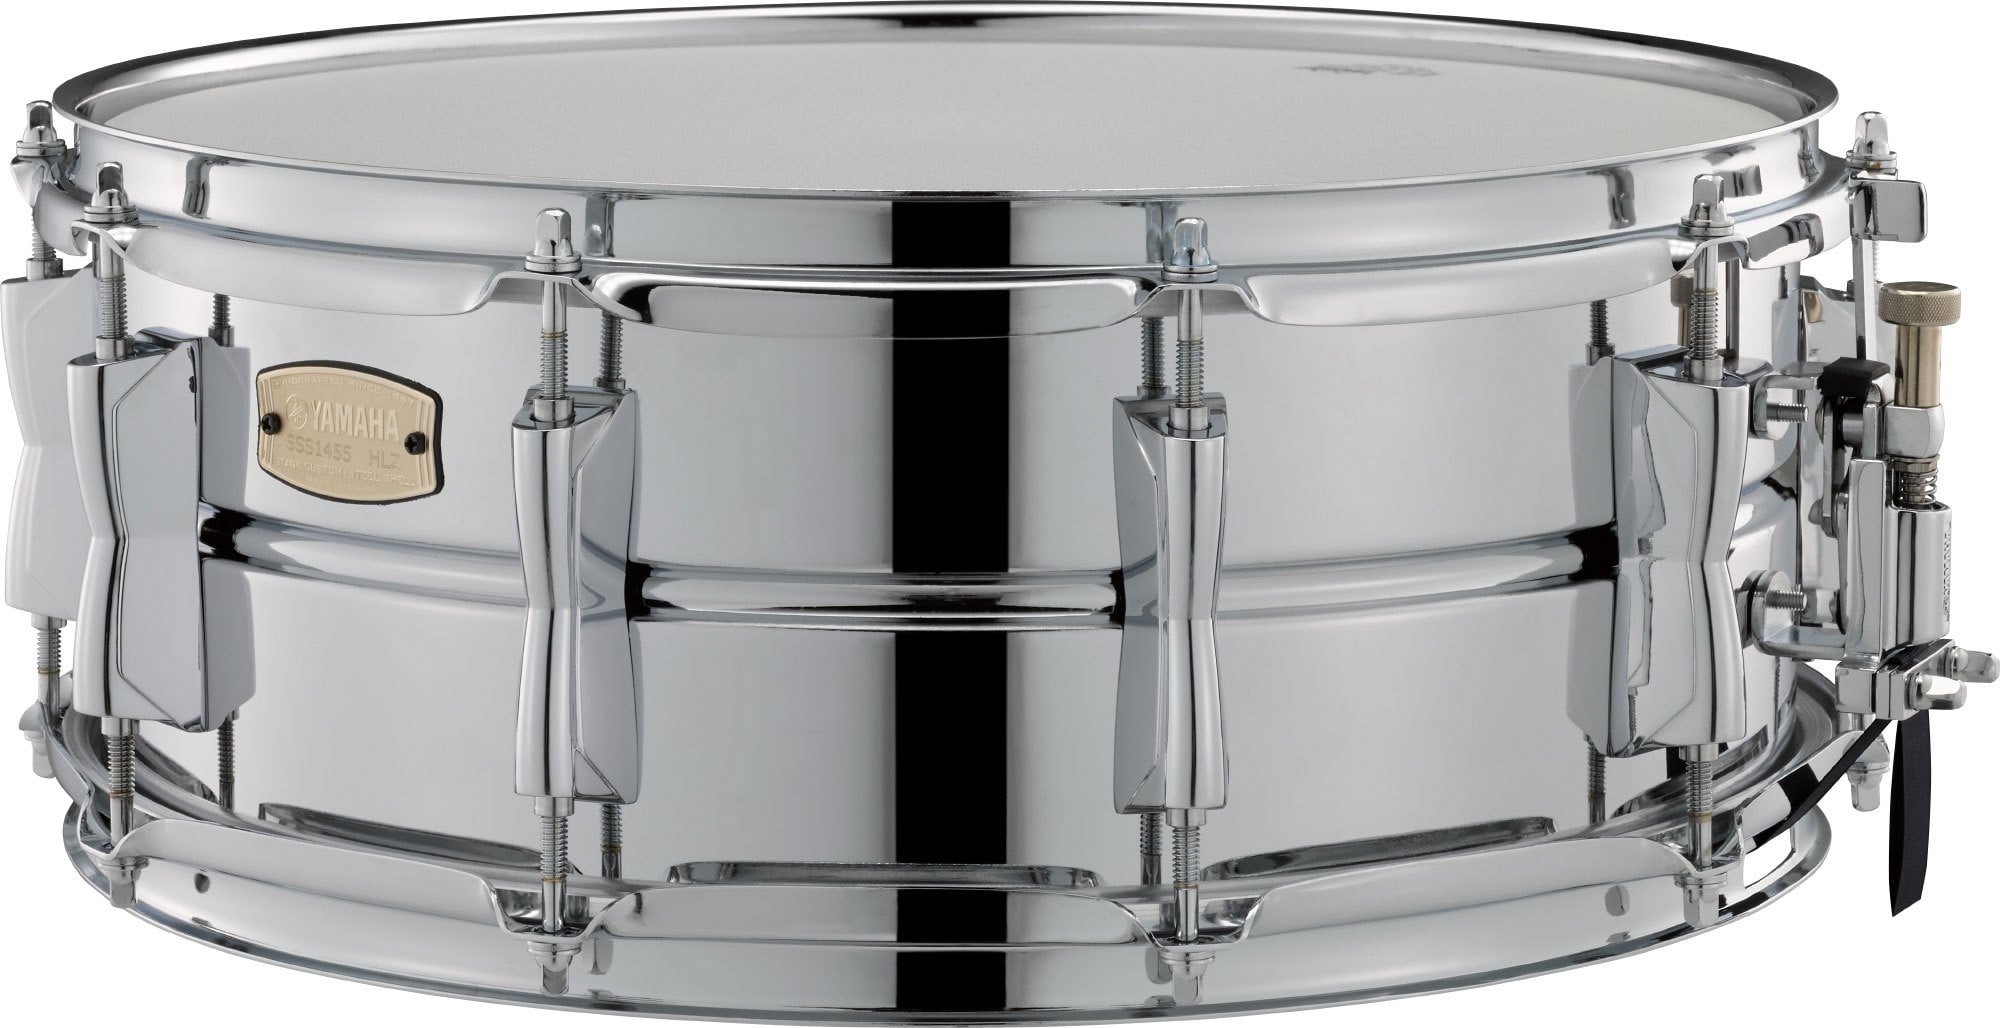 ヤマハ | Stage Custom Steel Snare Drums - スネアドラム - 概要